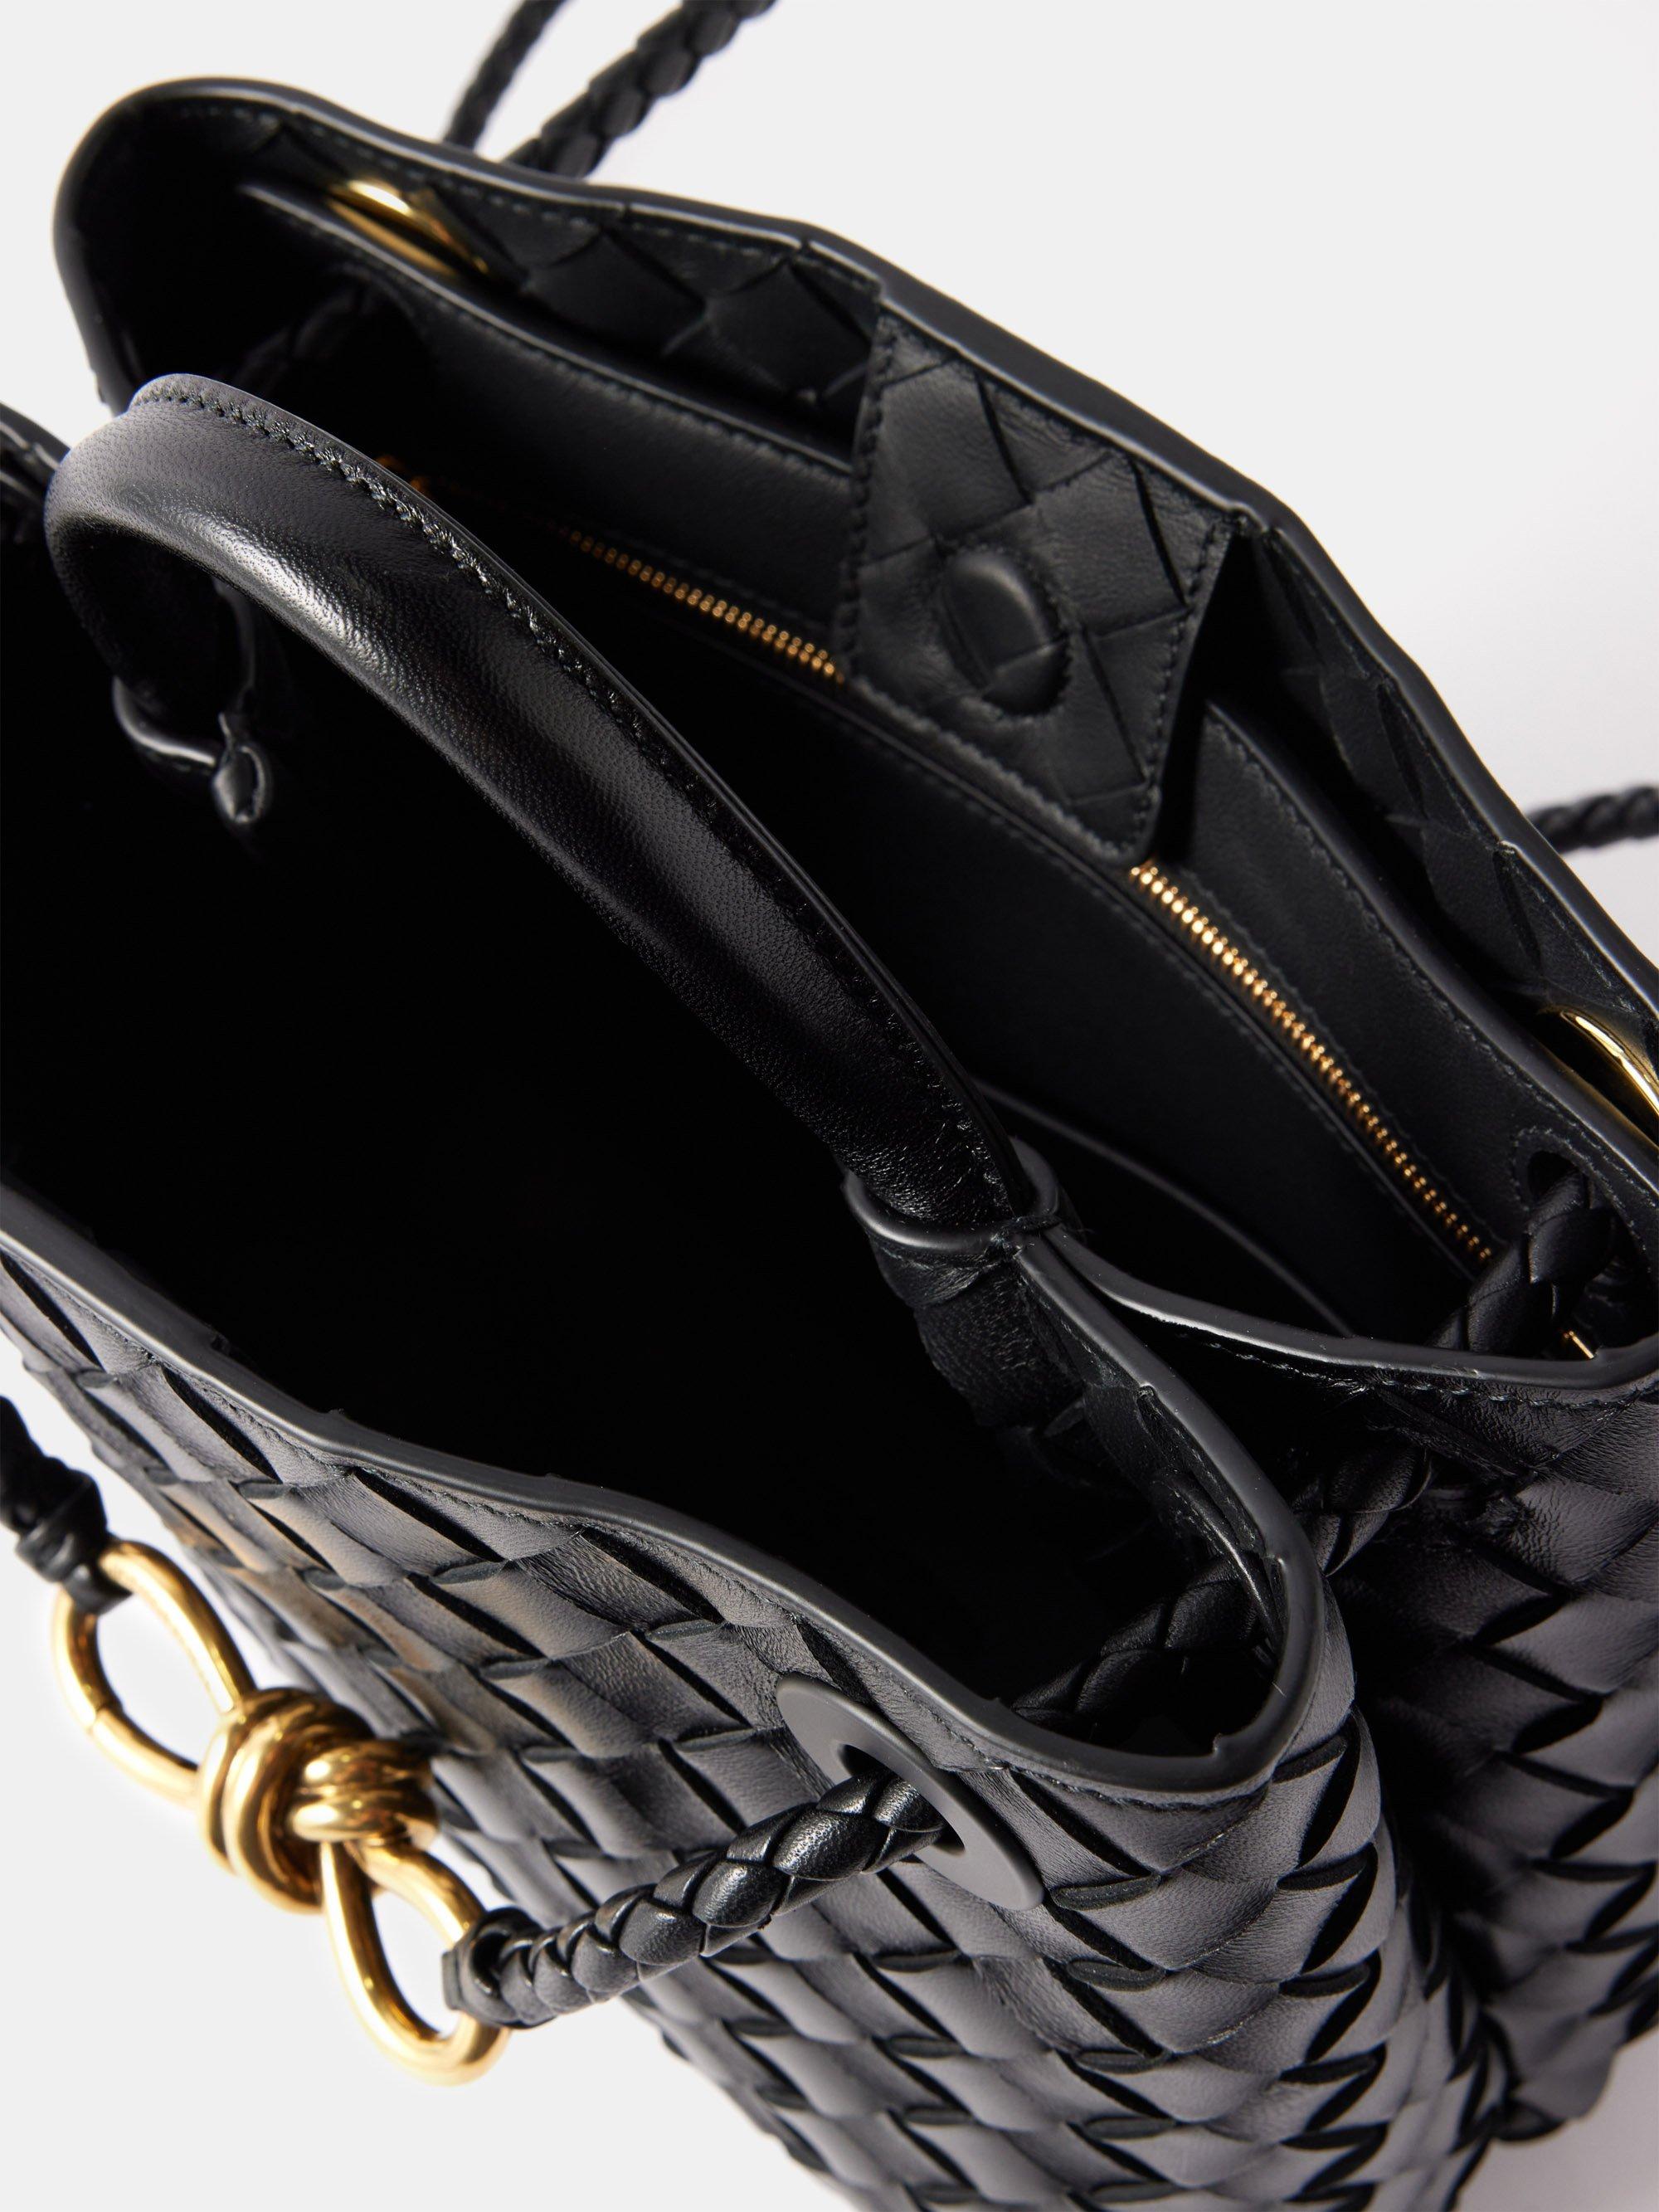 Black Andiamo small Intrecciato-leather handbag, Bottega Veneta